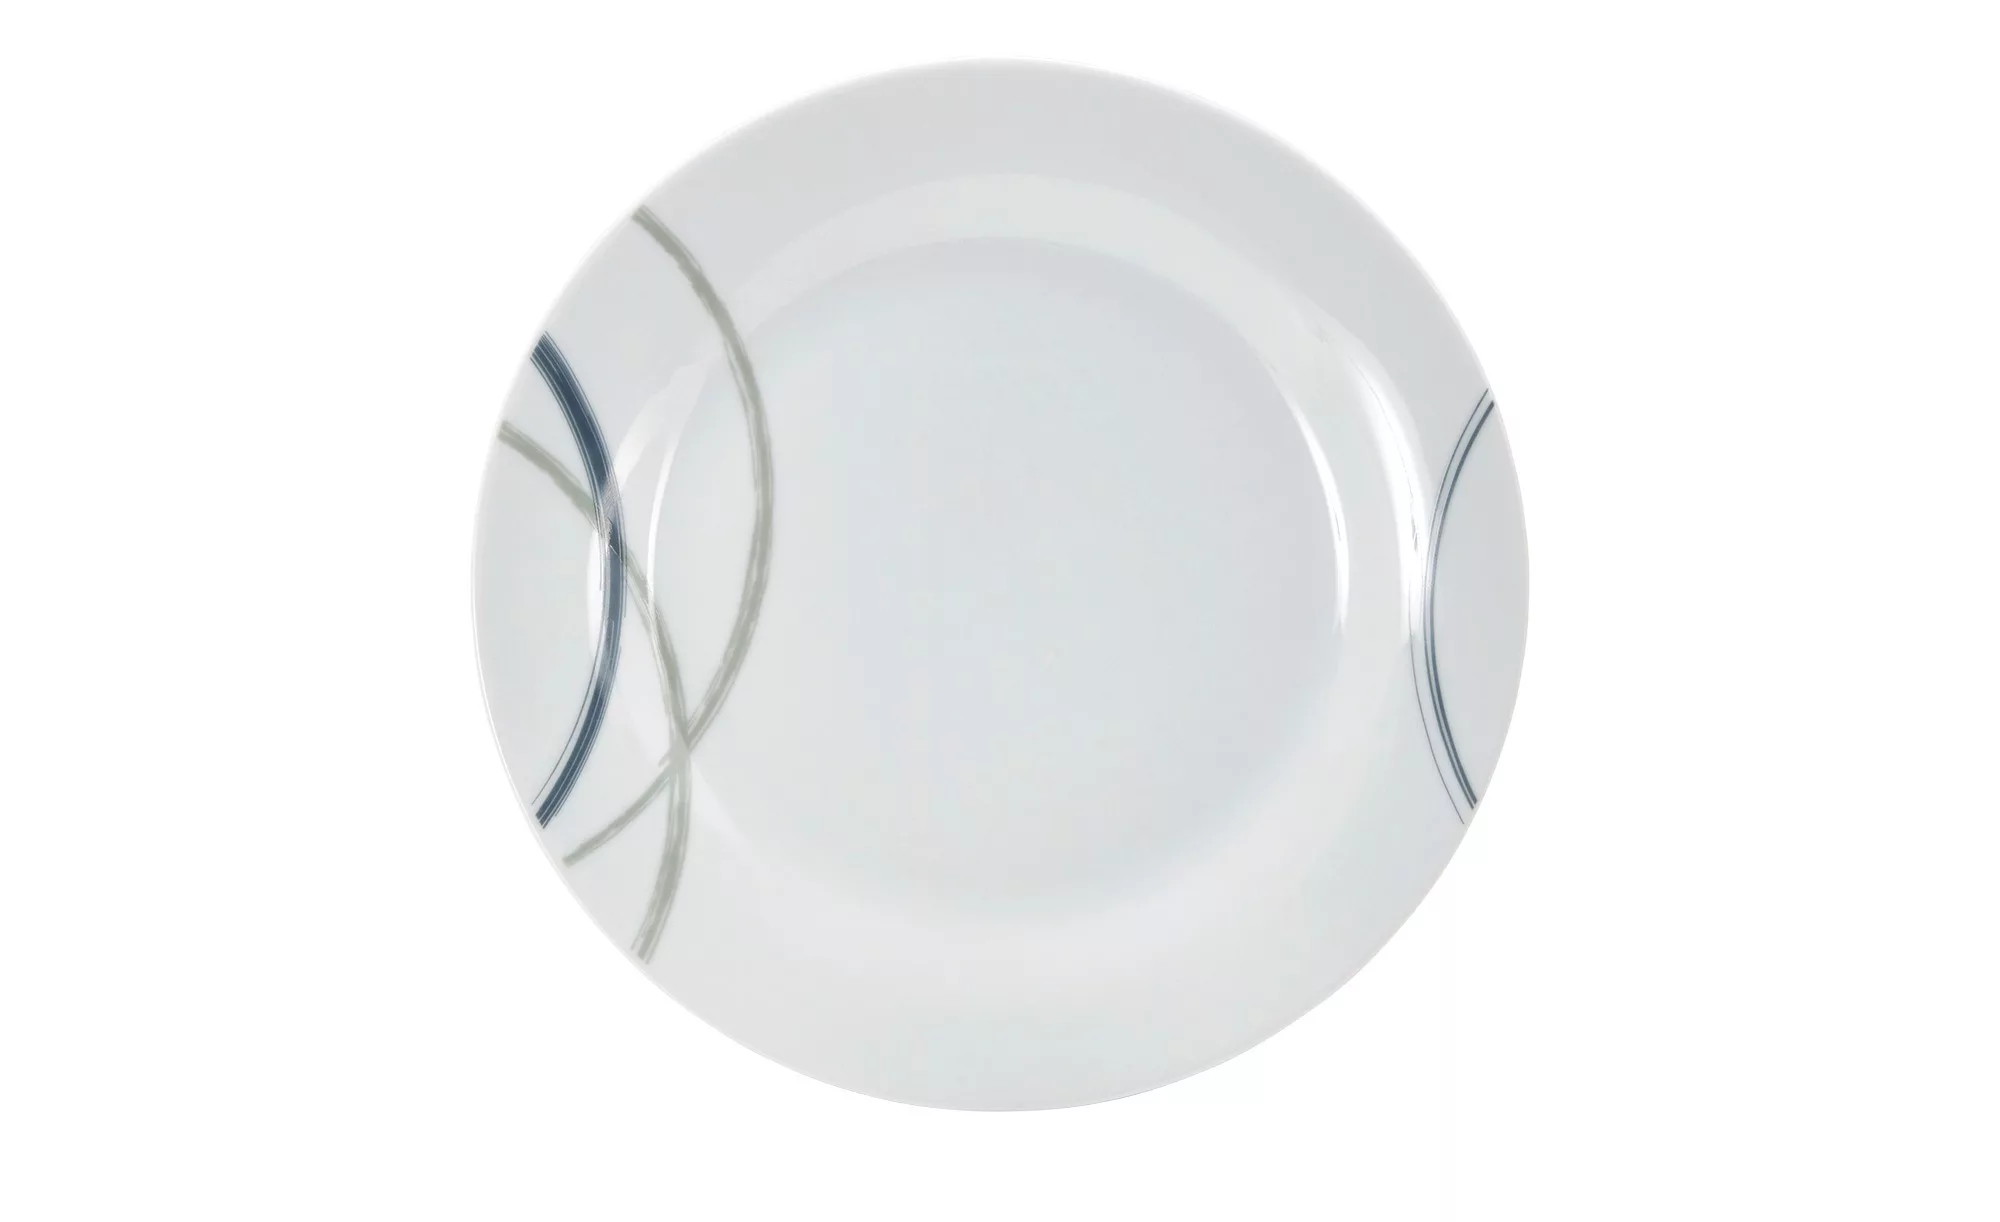 levelone Tafelservice 12-teilig  Adria - weiß - Porzellan - Sconto günstig online kaufen